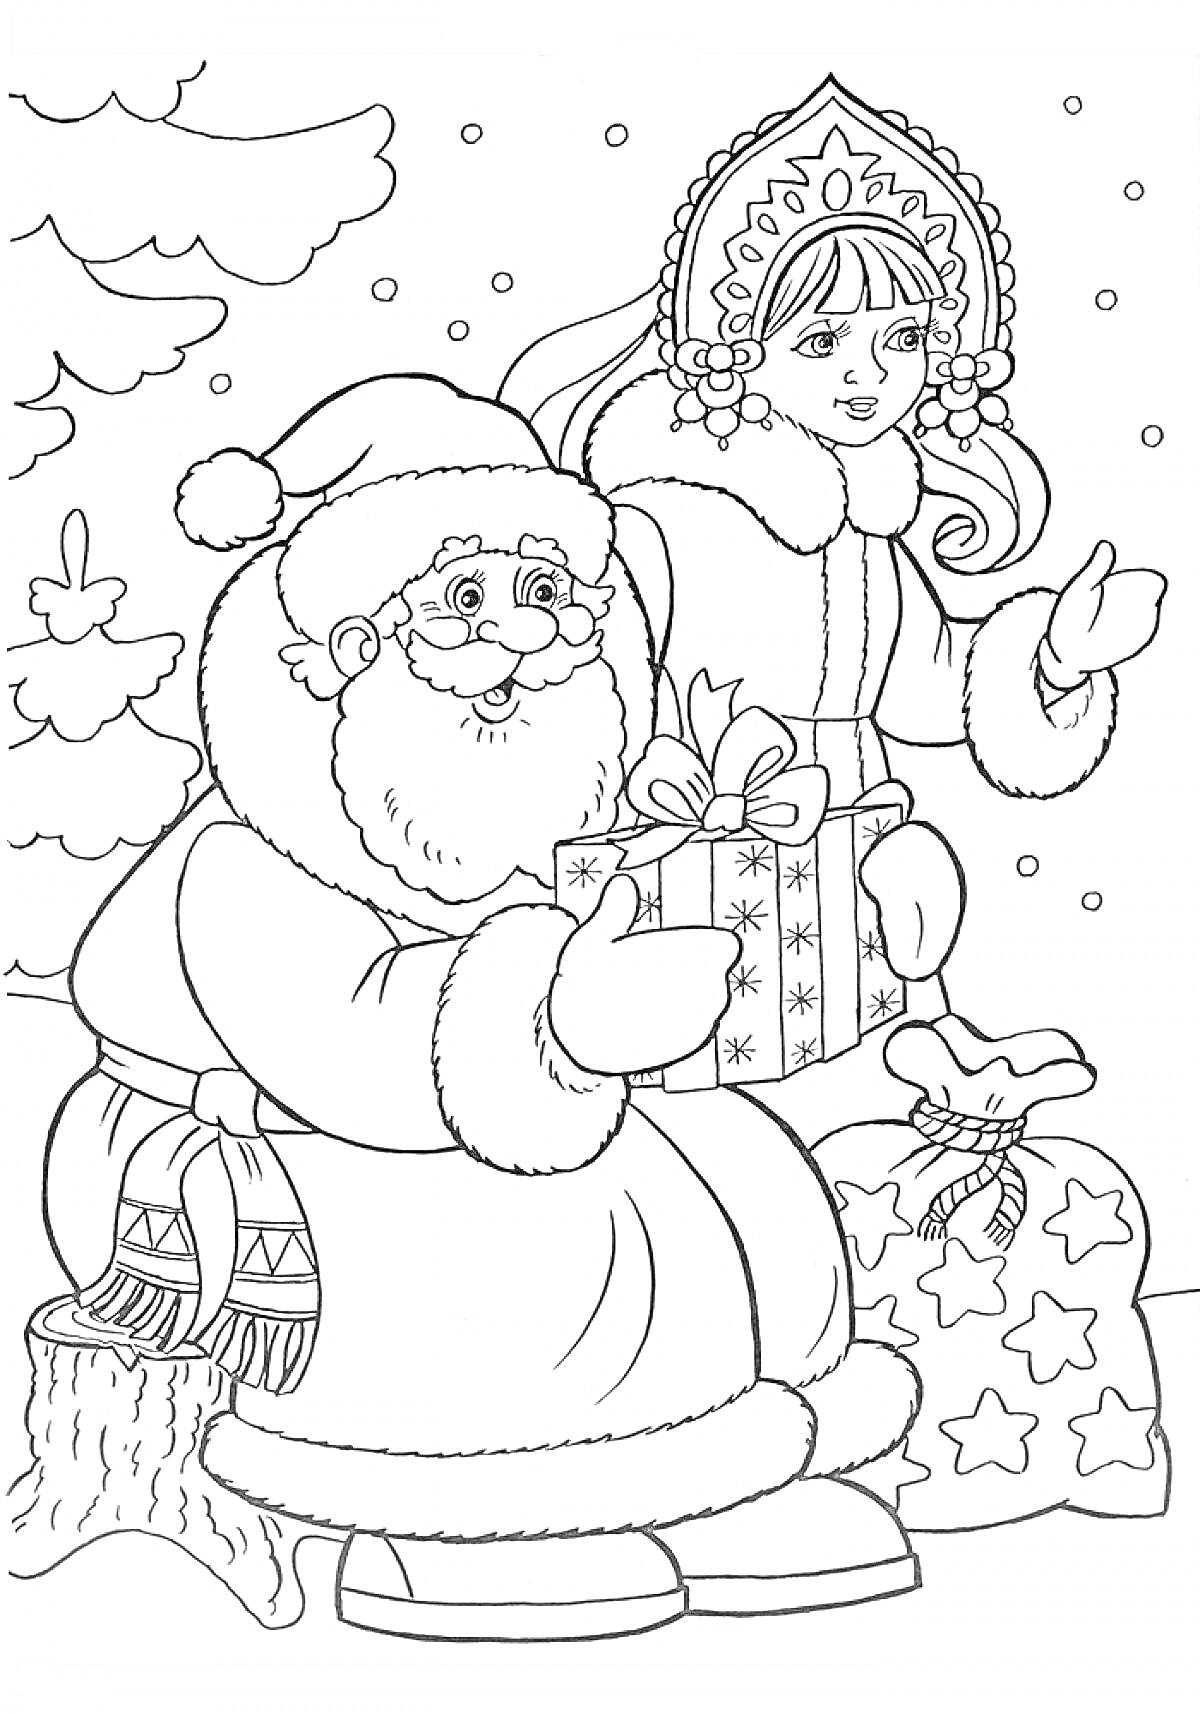 Раскраска Дед Мороз и Снегурочка с подарками возле елки и сугроба